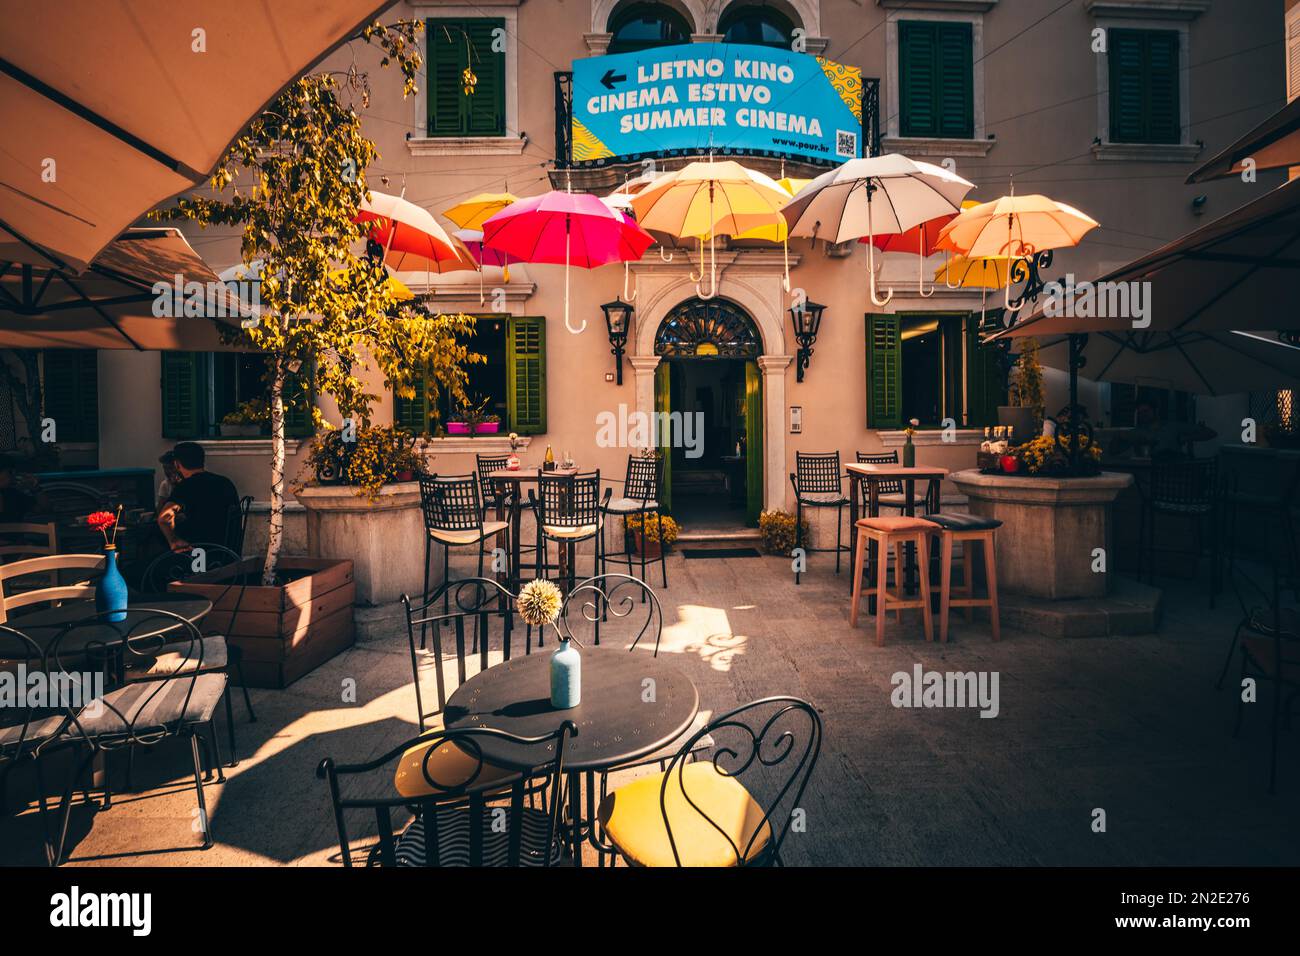 Restaurante casa de piedra fotografías e imágenes de alta resolución - Alamy